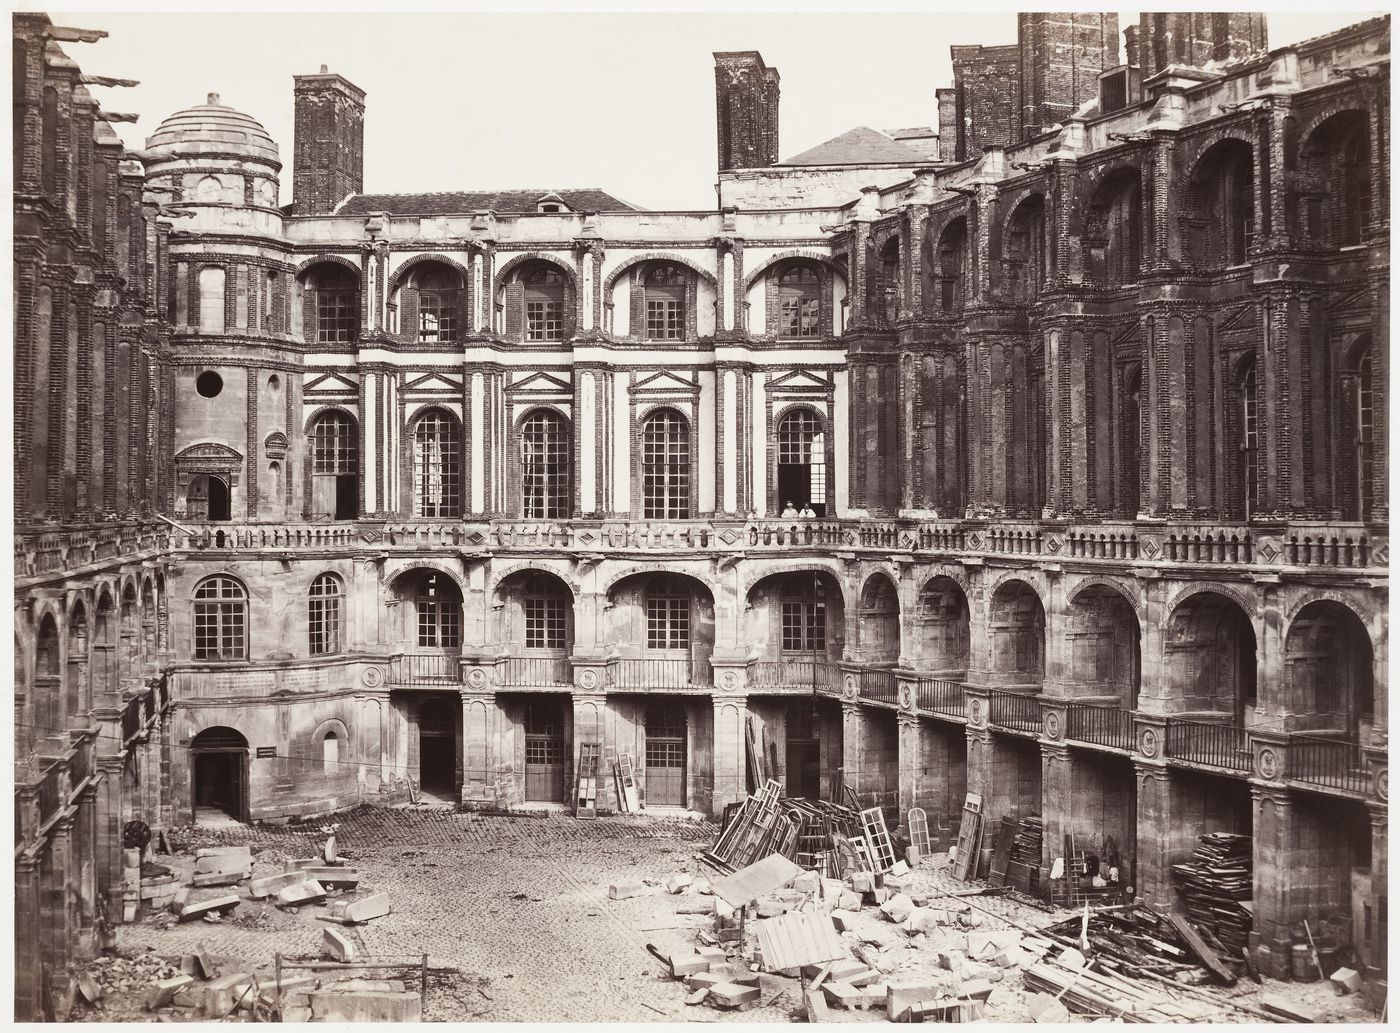 Château de St. Germain-en-Laye, view of interior courtyard during reconstruction, Paris, France